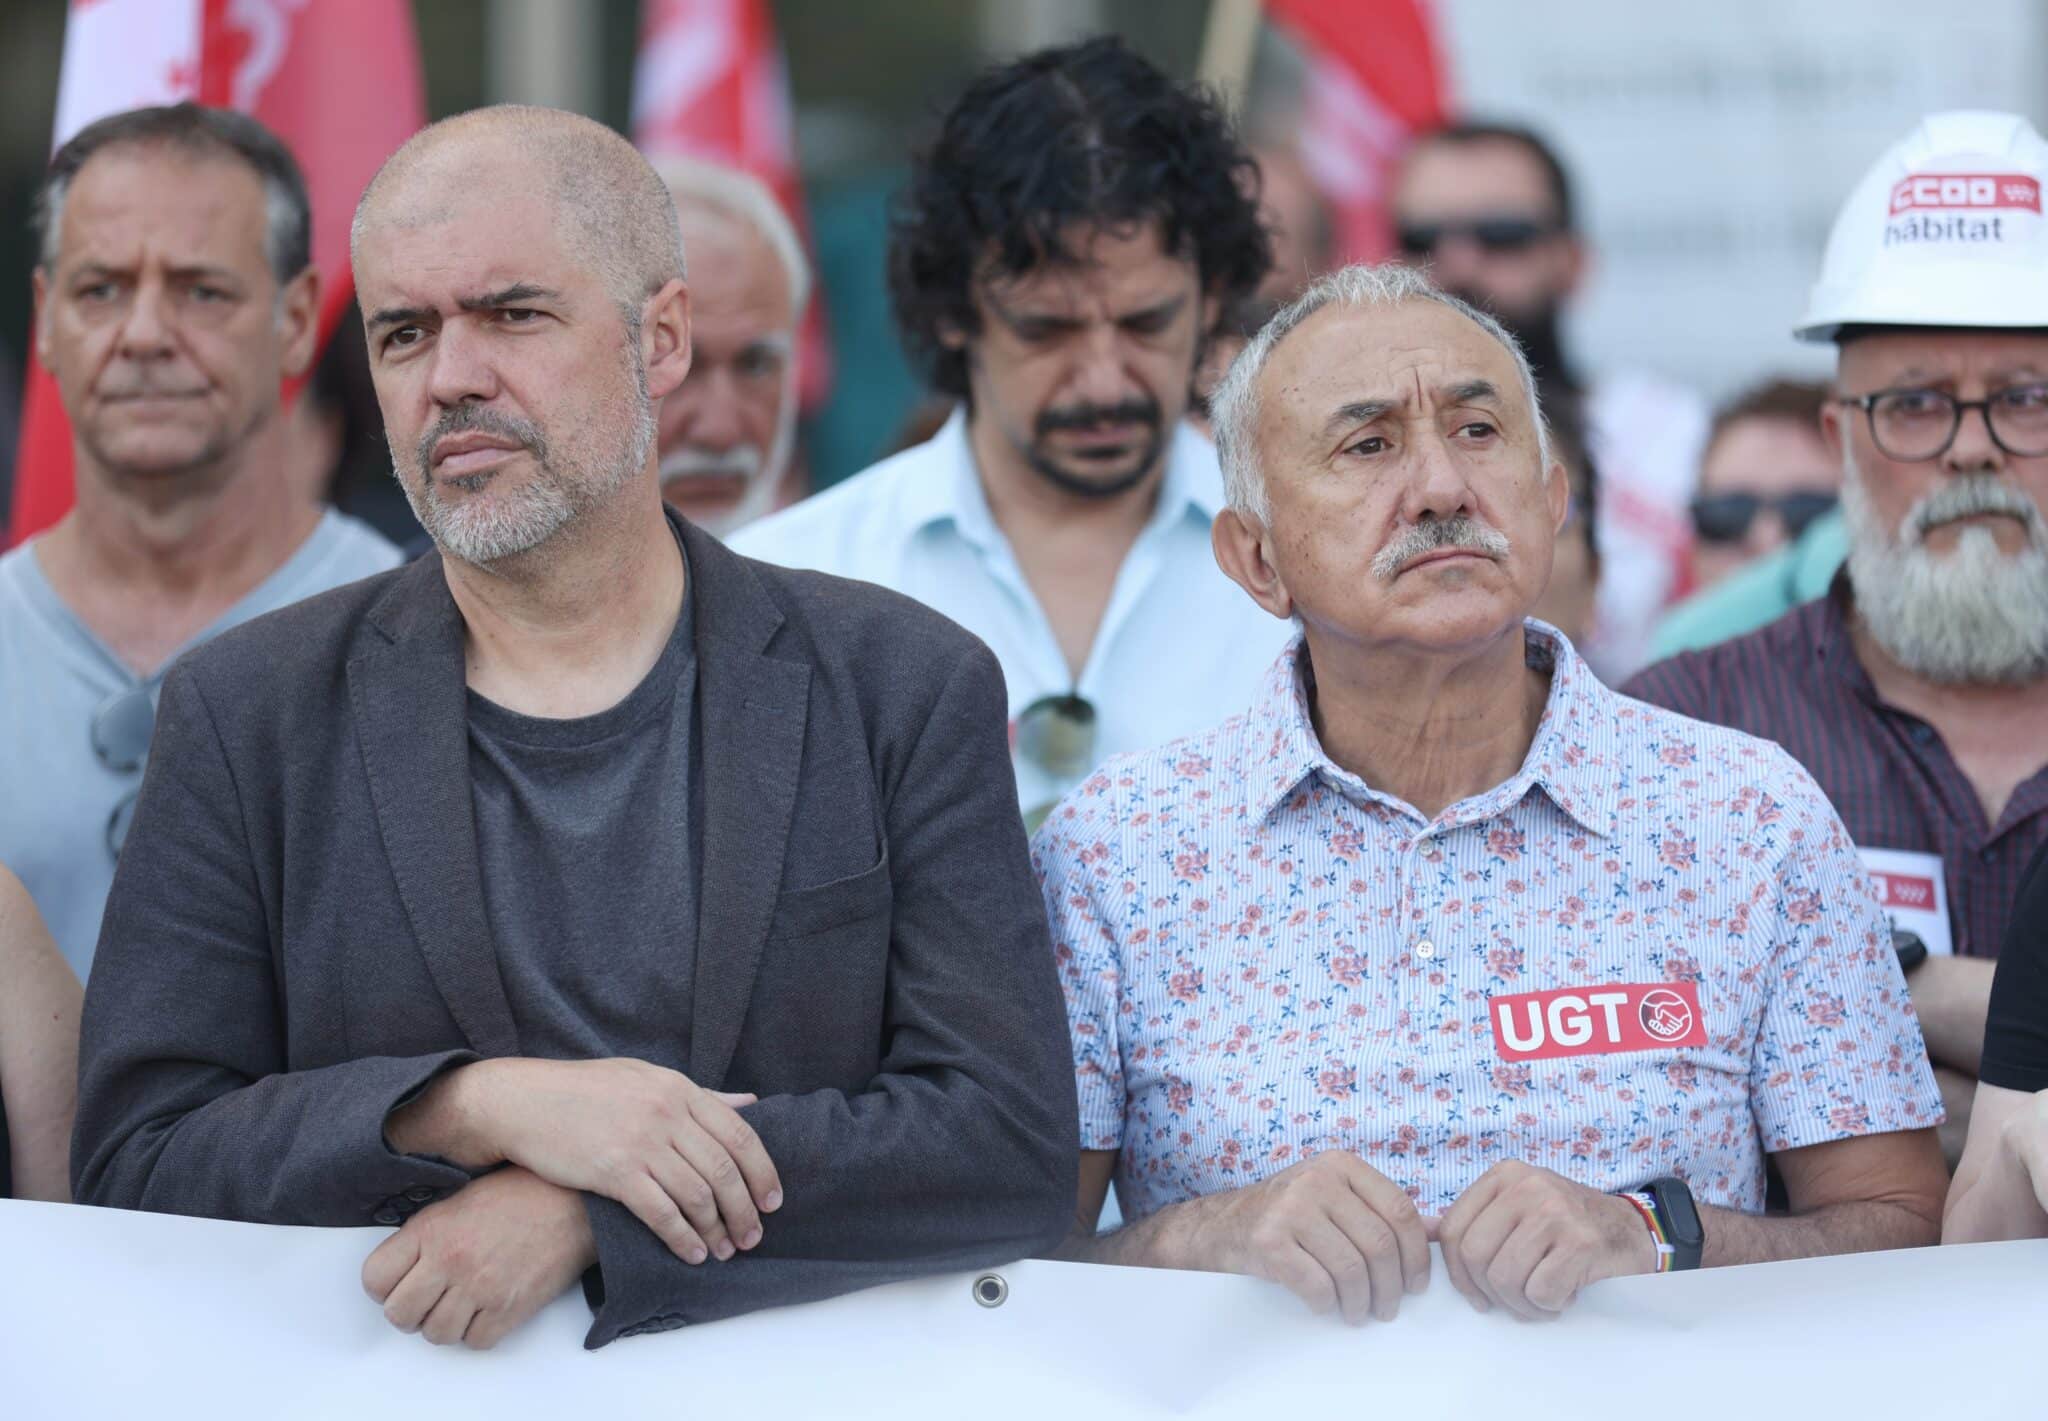 El secretario general de CCOO, Unai Sordo (izq.), y el de UGT, Pepe Álvarez, sostienen una pancarta en una concentración con motivo del fallecimiento de dos trabajadores por el calor, en la Plaza de Cibeles, en Madrid.